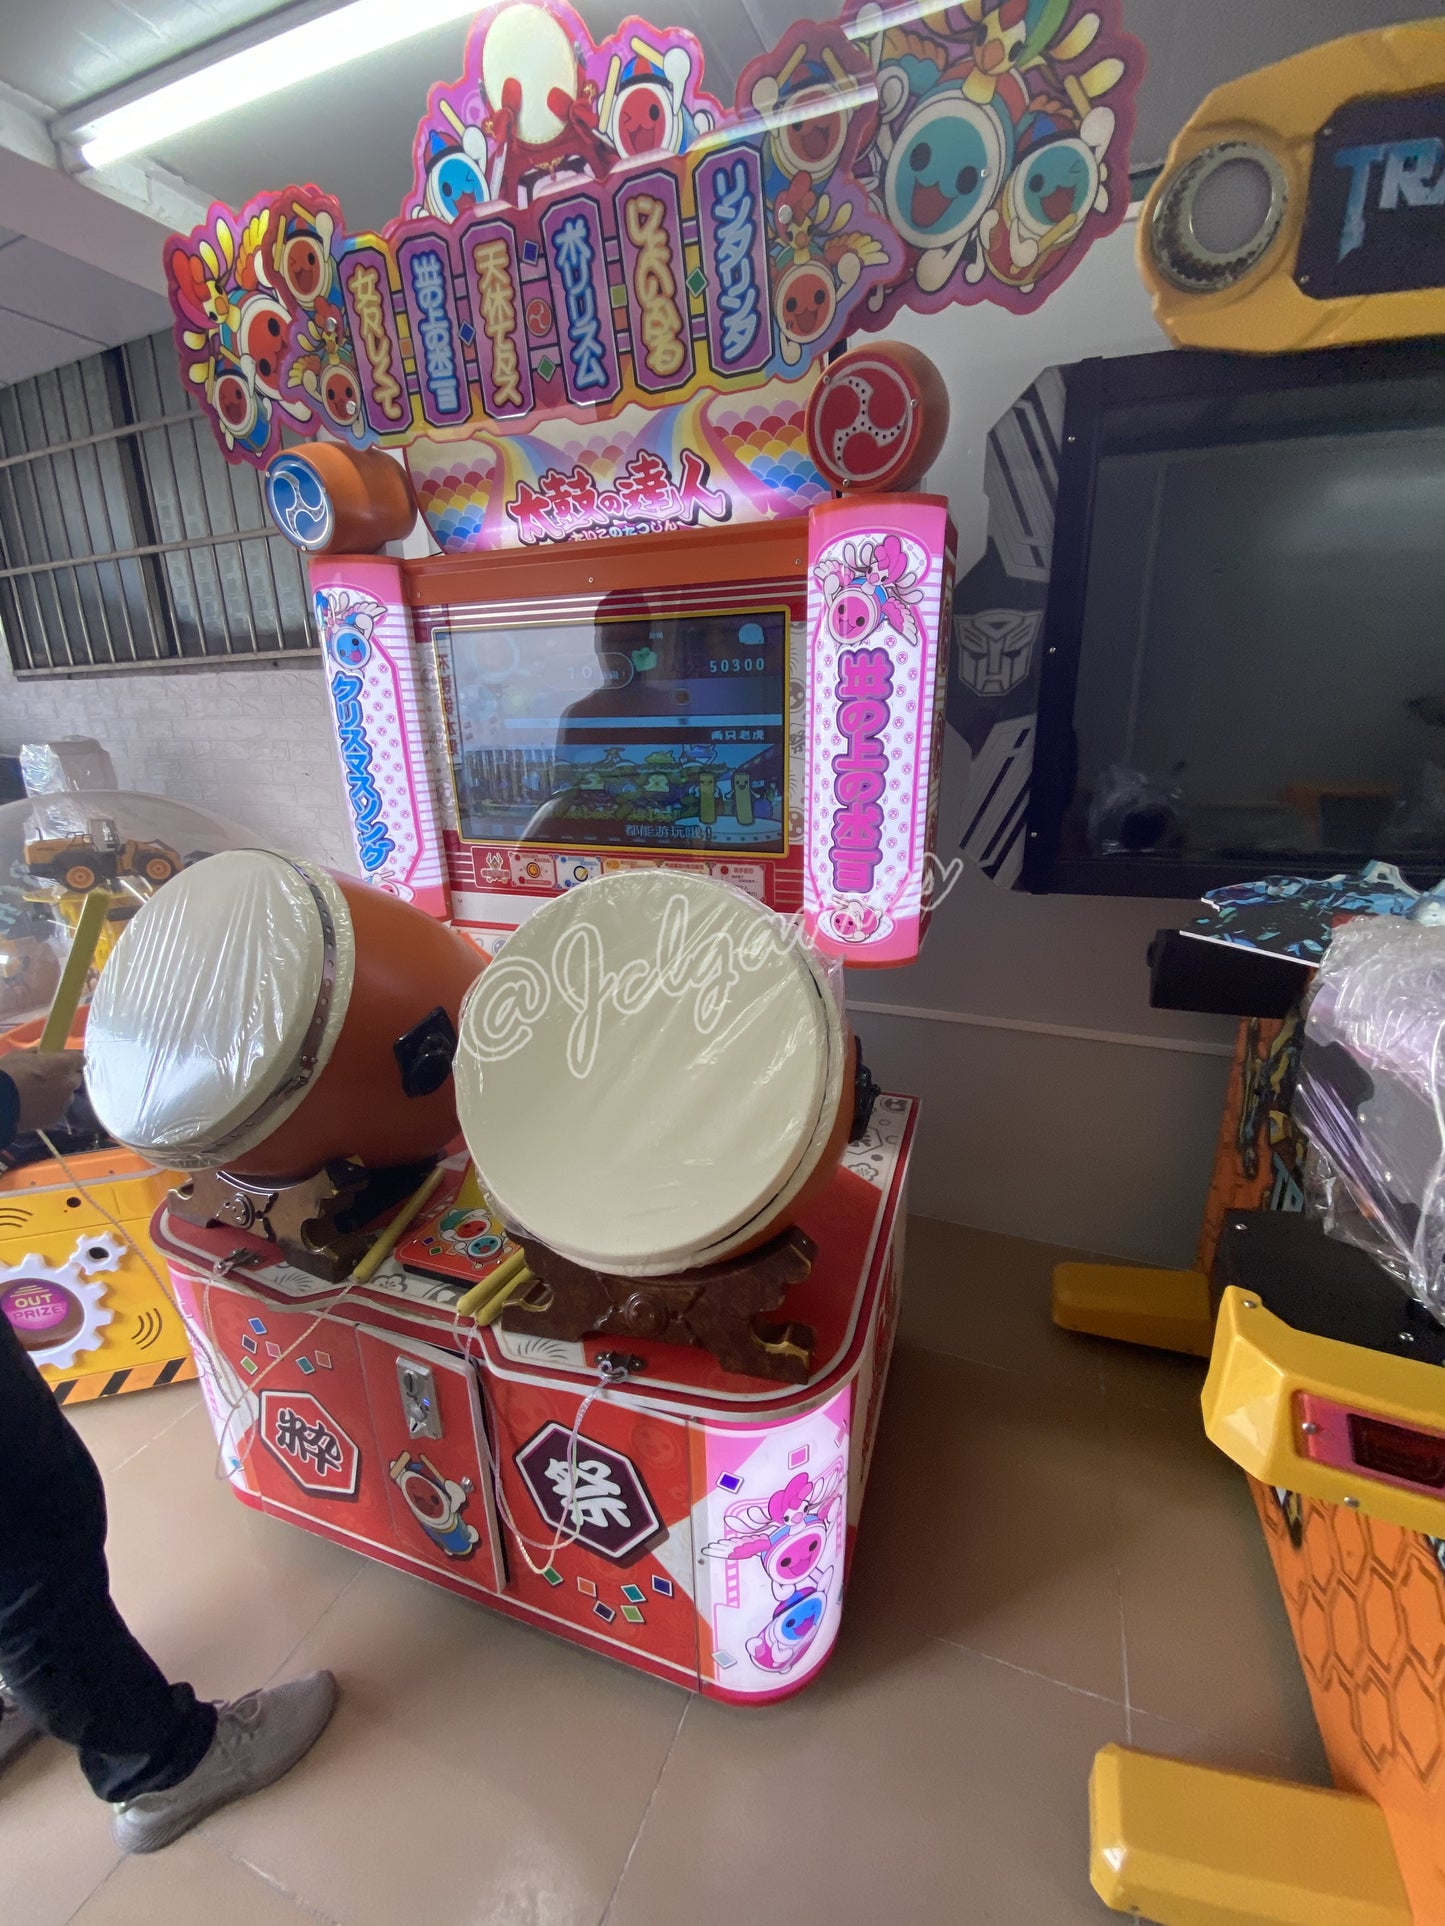 Namco Taiko no Tatsujin 12 Arcade Music Machine (used)-JCL Games